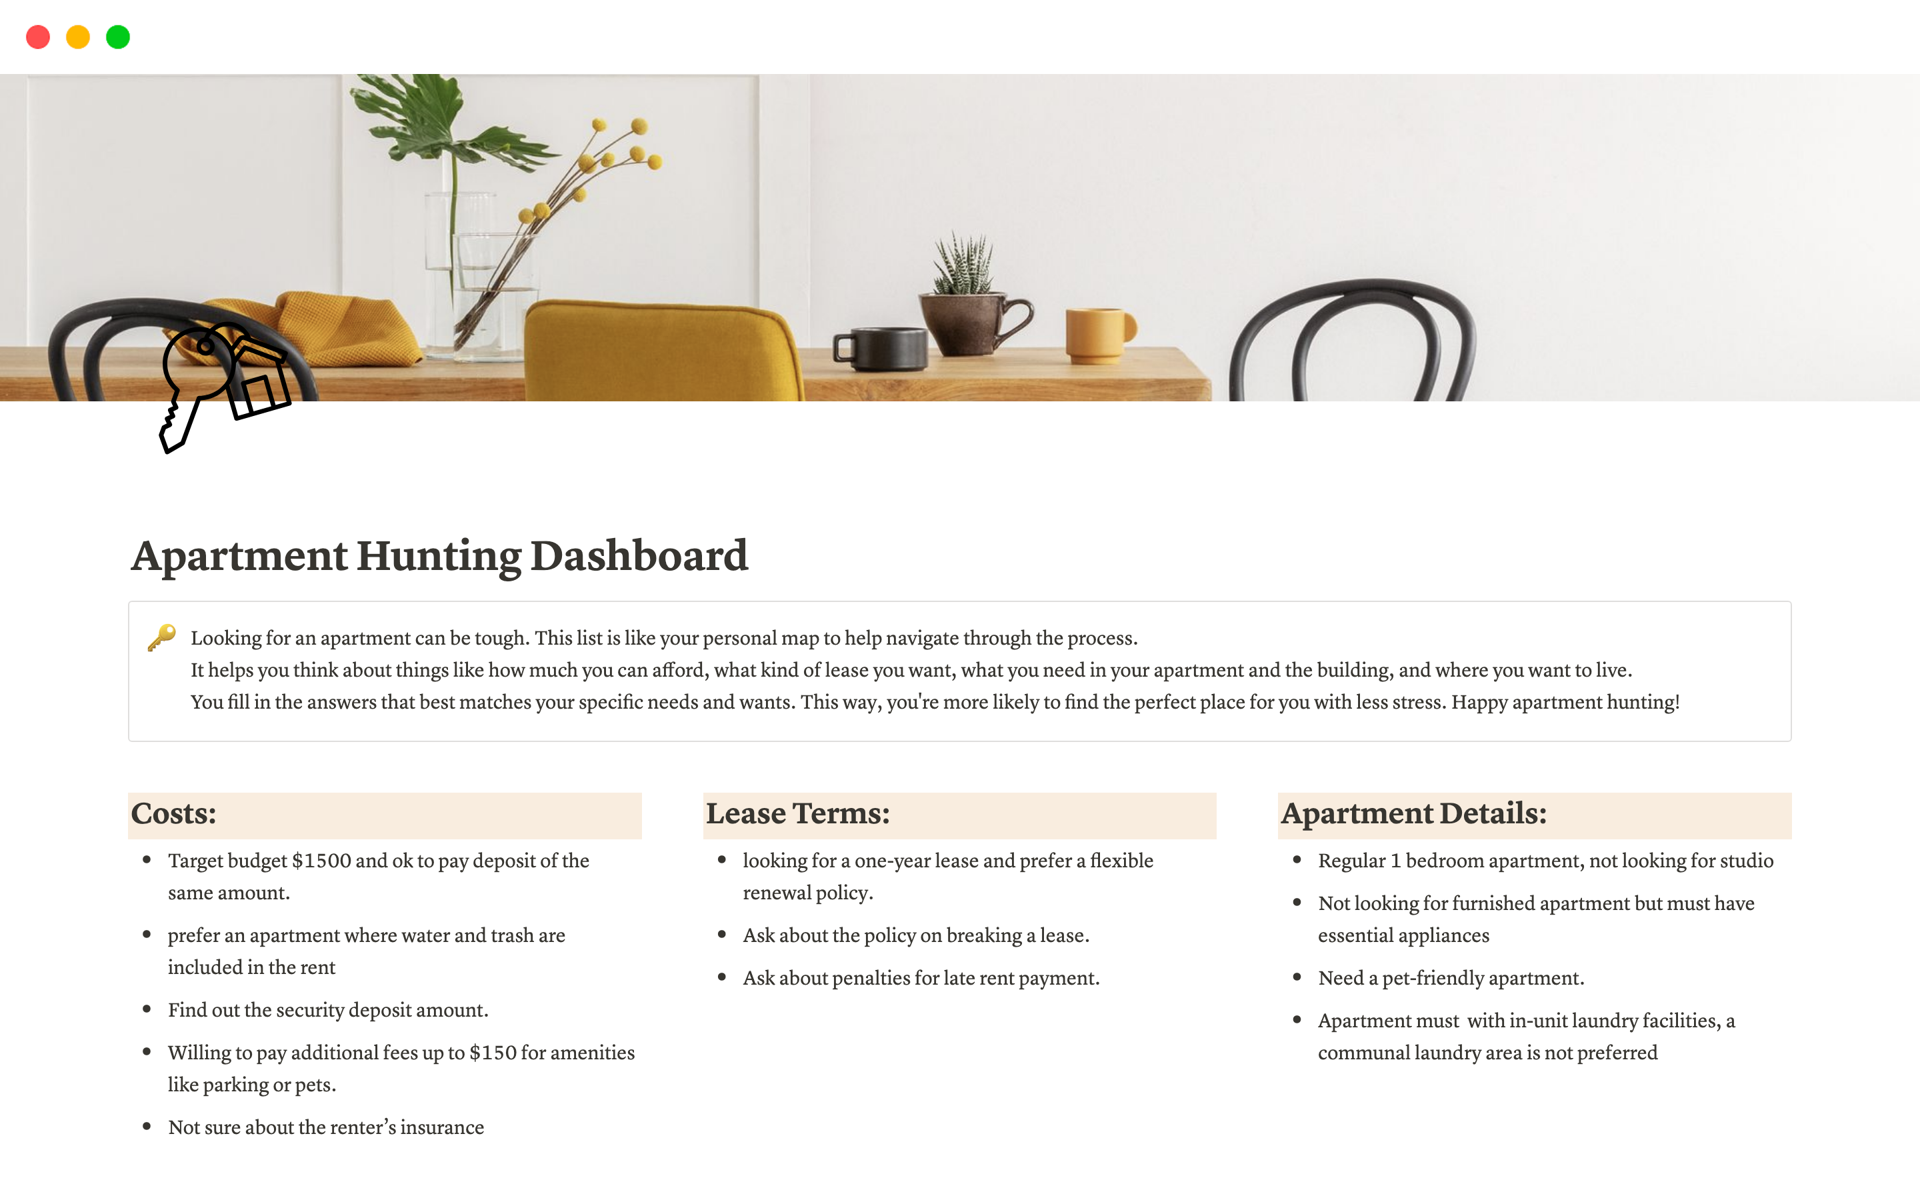 En förhandsgranskning av mallen för Apartment Hunting Dashboard